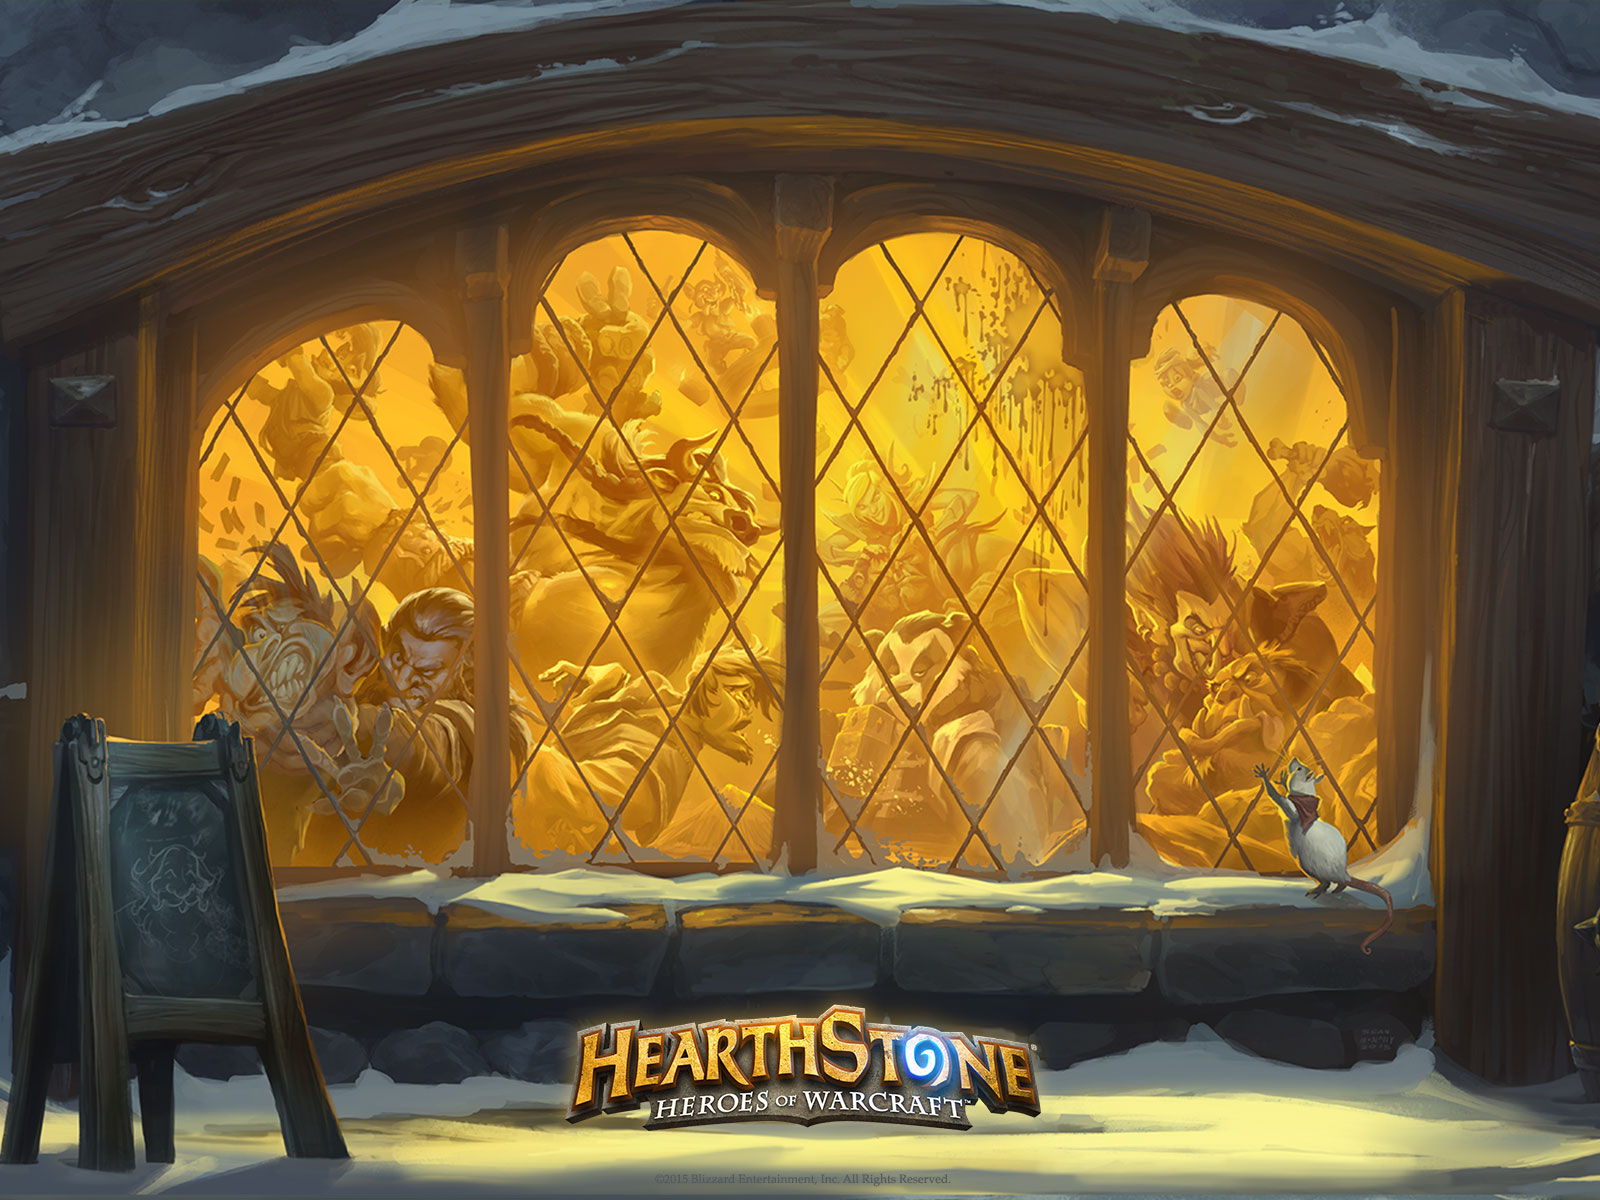 Tapeta ke hře Hearthstone: Heroes of Warcraft na stáhnutí